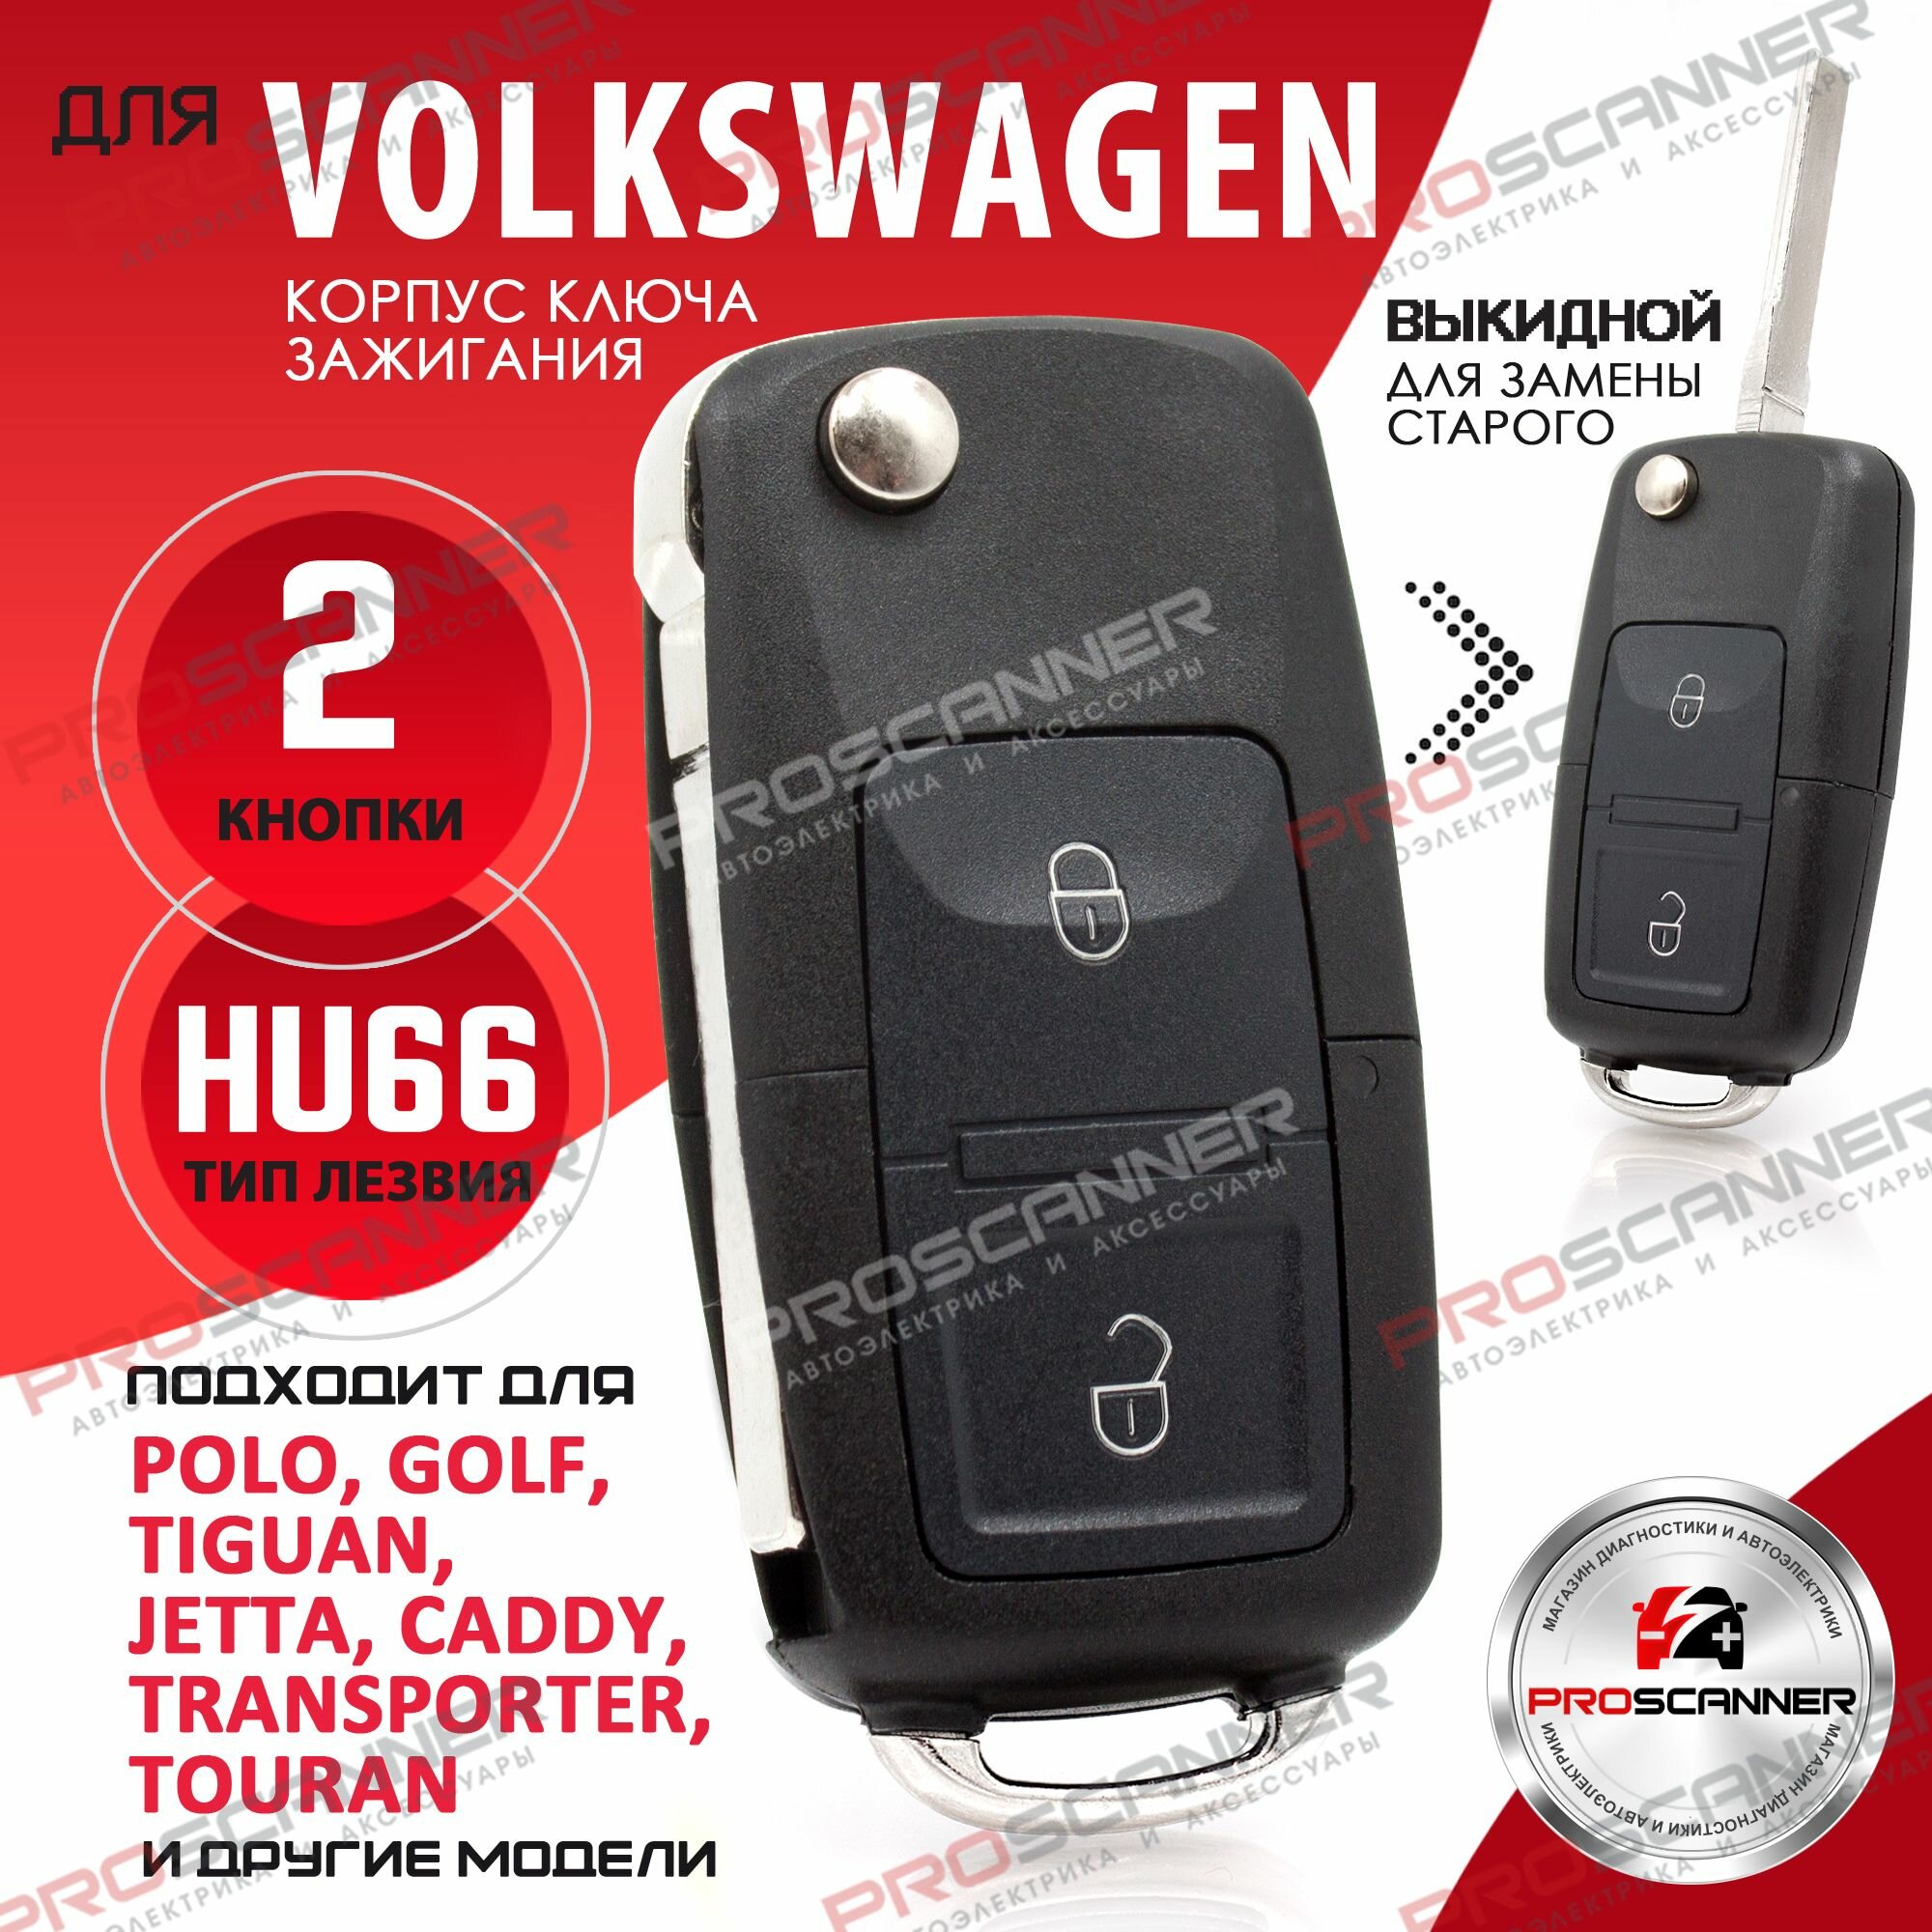 Корпус выкидного ключа зажигания для Volkswagen Golf Bora Polo Passat Гольф Бора Пора Пассат - 1 штука (2х кнопочный, лезвие HU66)